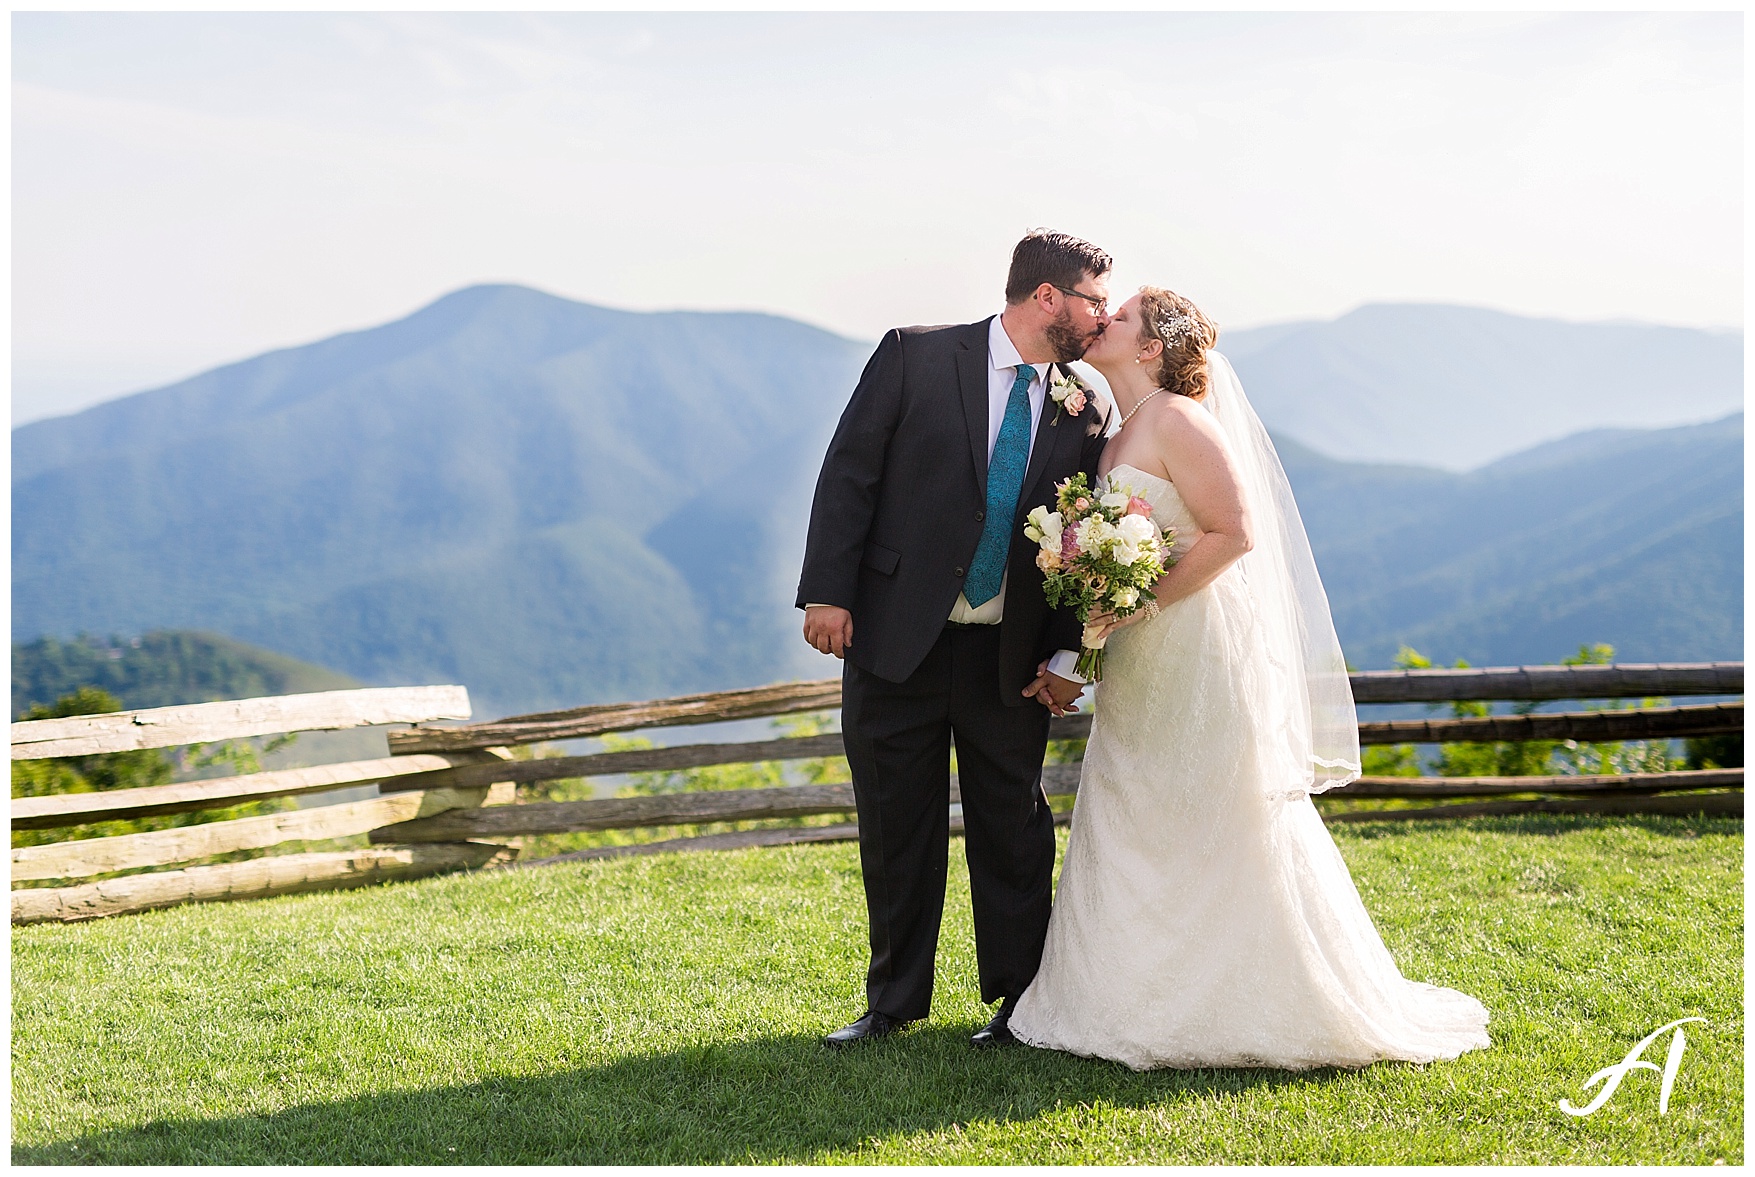 Mountain View Wedding || Central Virginia, Wintergreen Resort Wedding || Ashley Eiban Photography || www.ashleyeiban.com